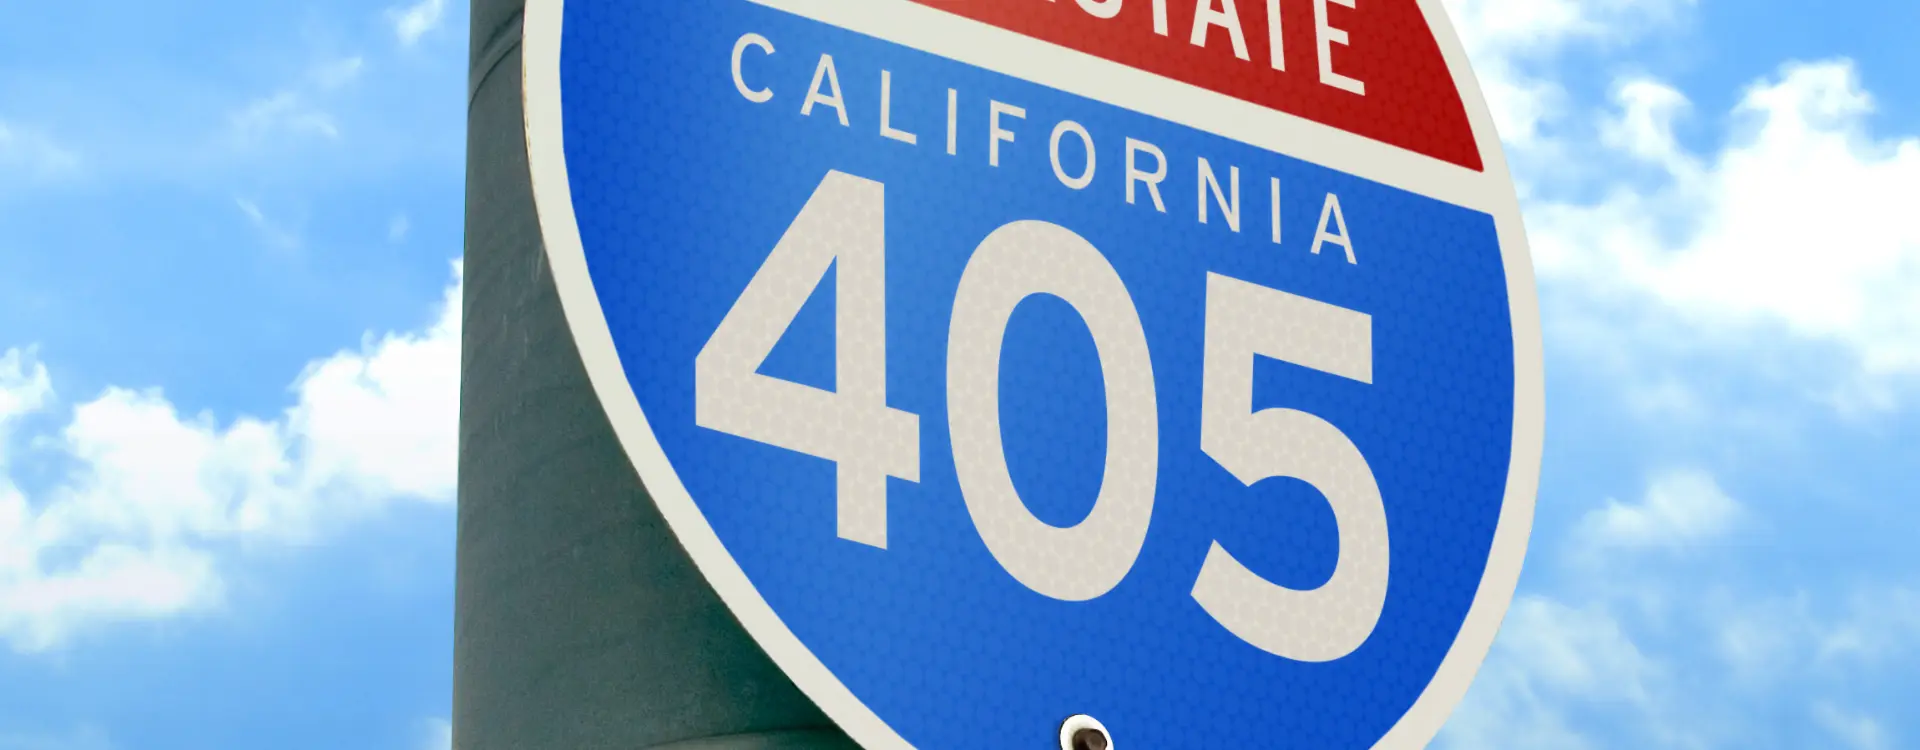 405 freeway crash